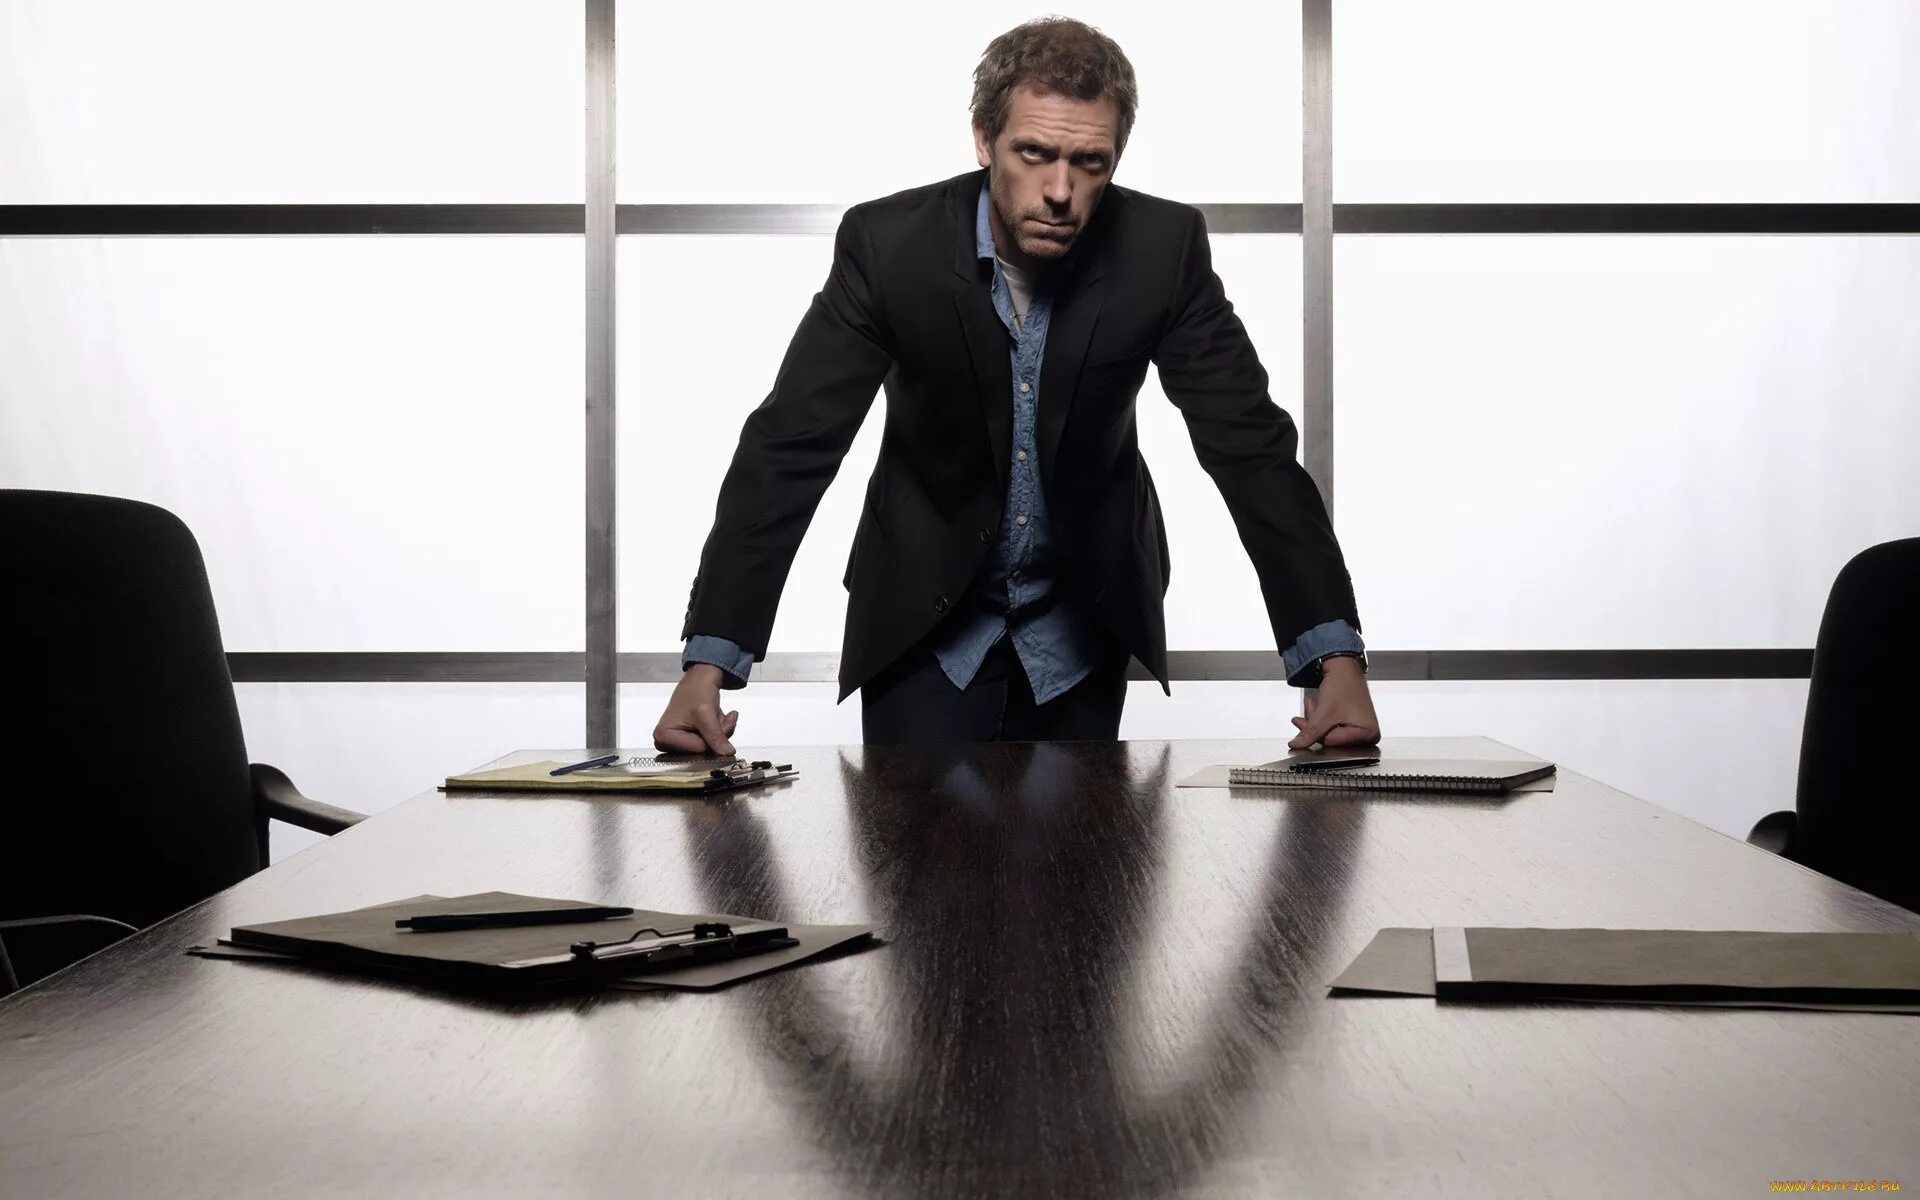 Возле стола представлявшего сильно уменьшенную. Человек опирается на стол. Бизнесмен за столом. Мужчина в костюме в офисе. Властный человек.